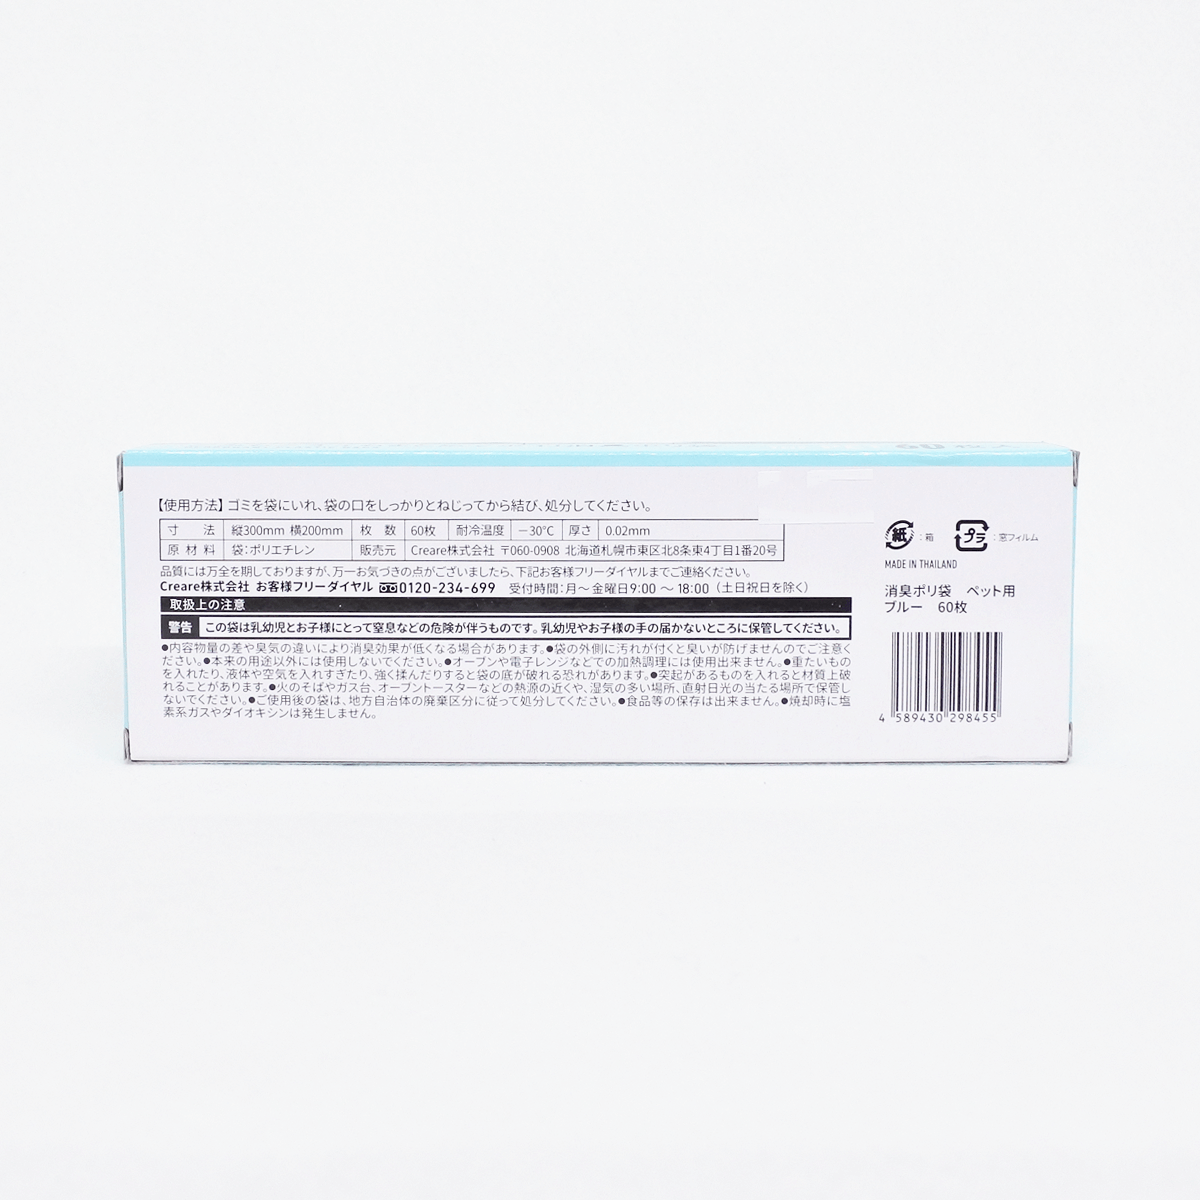 札幌藥妝 寵物用 消臭塑膠袋(藍色) 60個